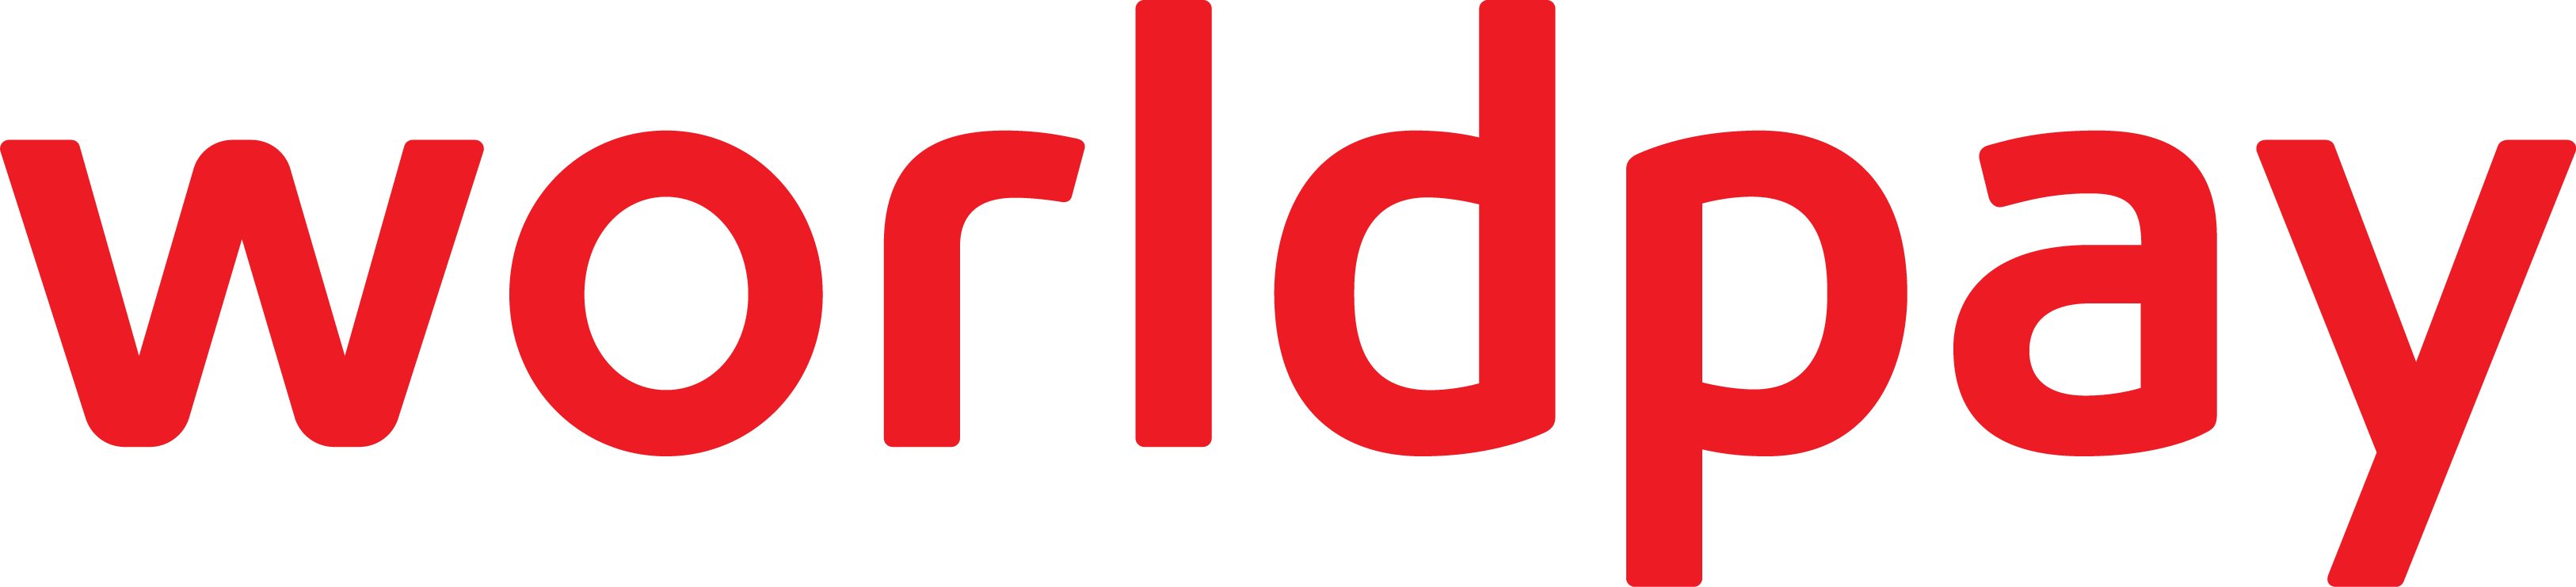 worldpay_logo_red